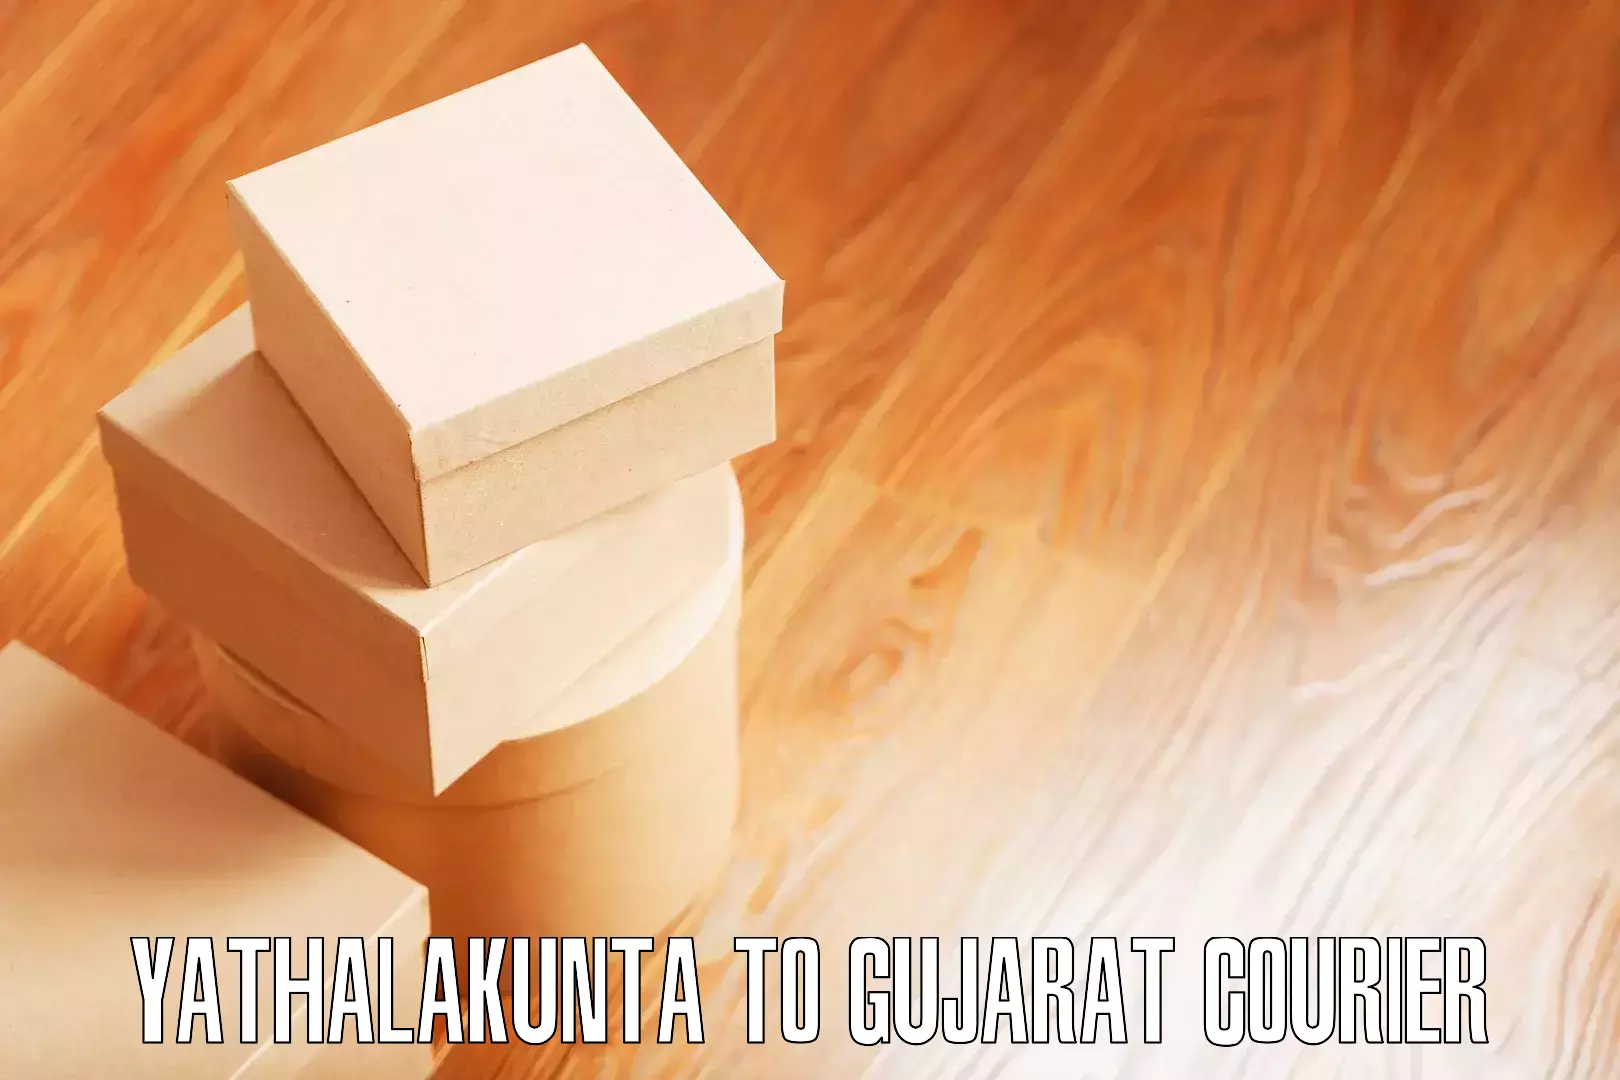 Household moving strategies Yathalakunta to Gujarat